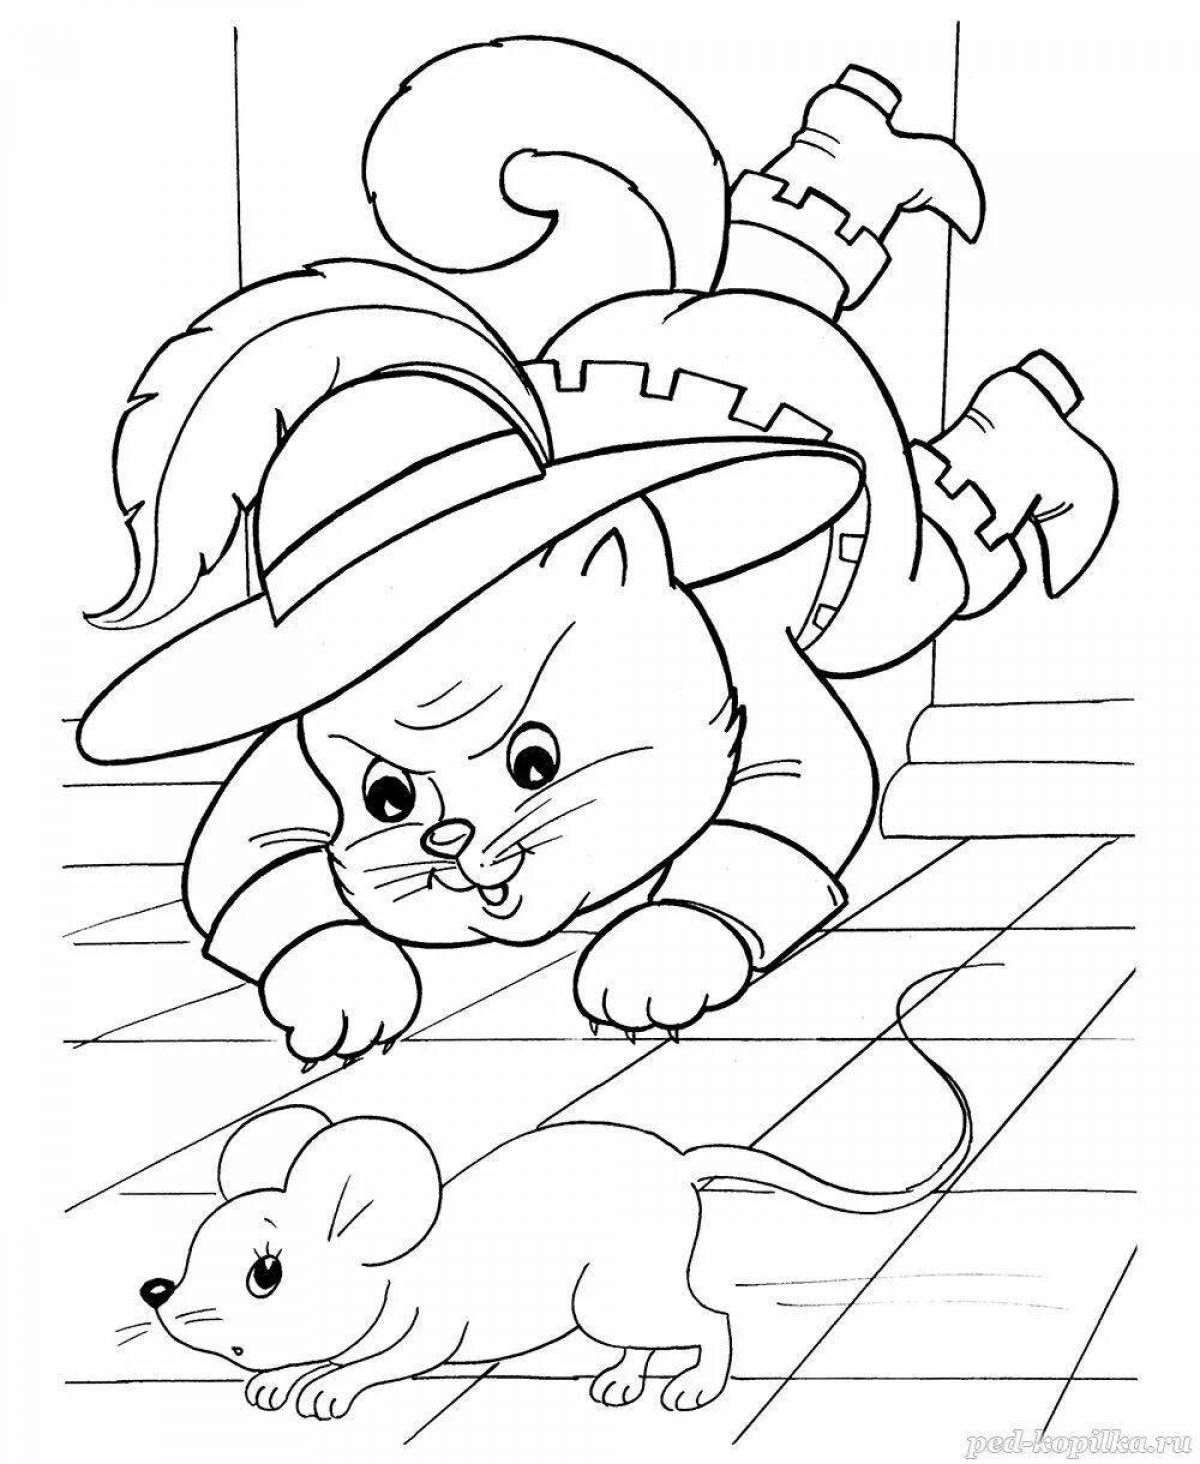 Комическая раскраска «кот в сапогах» шарля перро